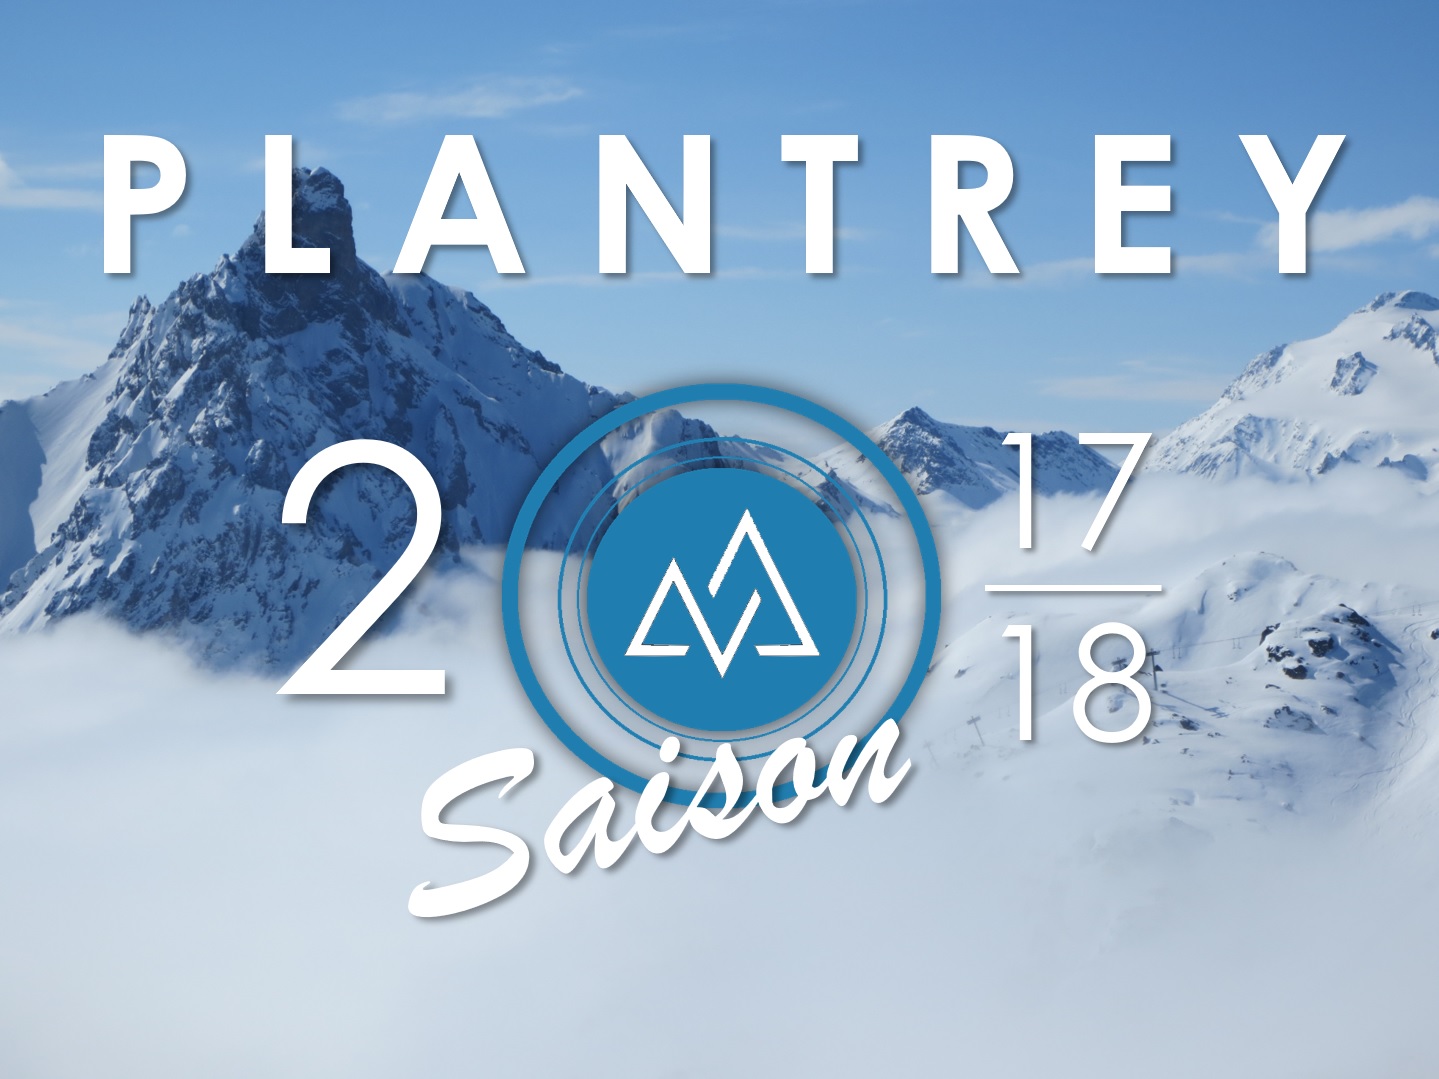 Plantrey - saison 2017/2018